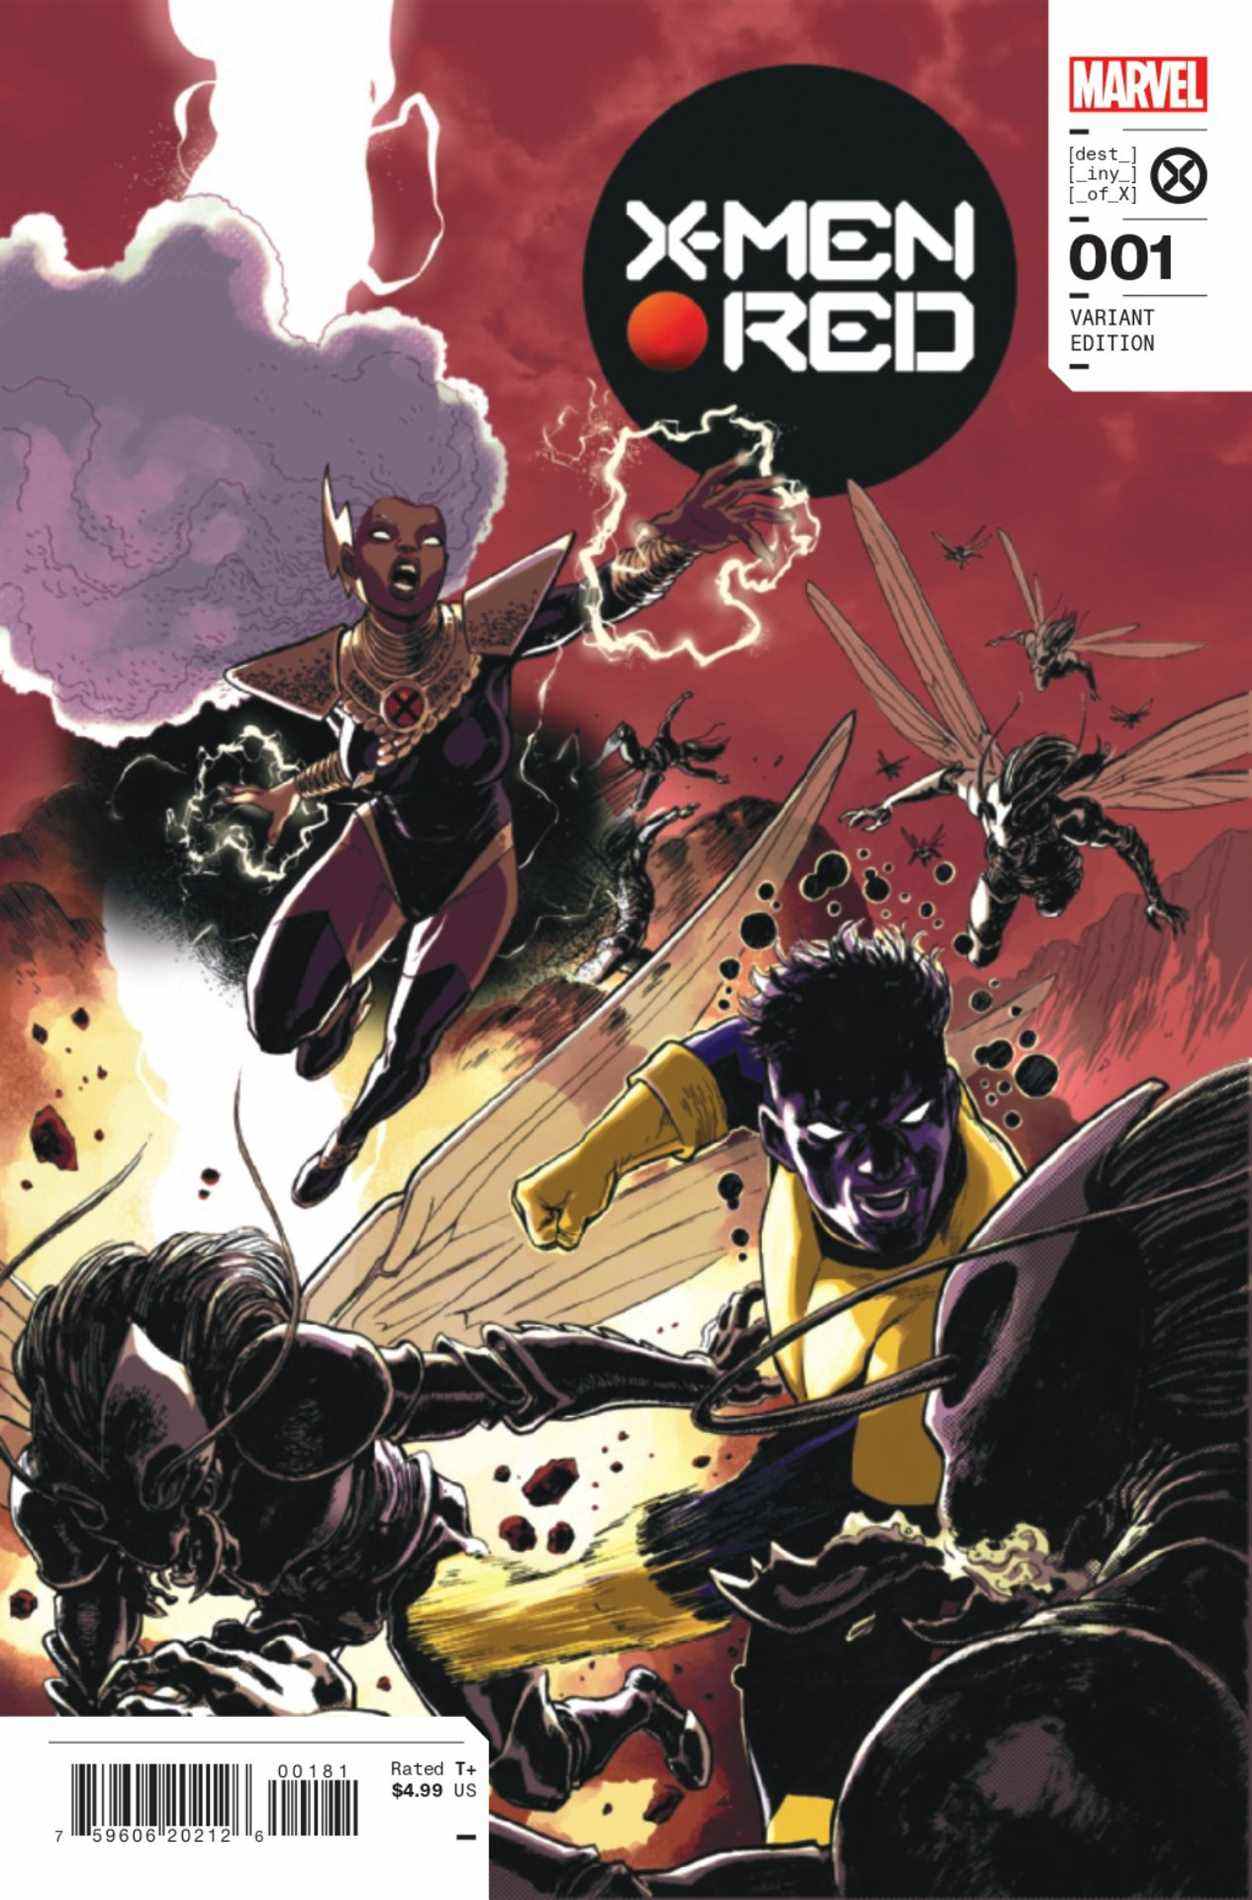 Couvertures de la variante X-Men Red # 1